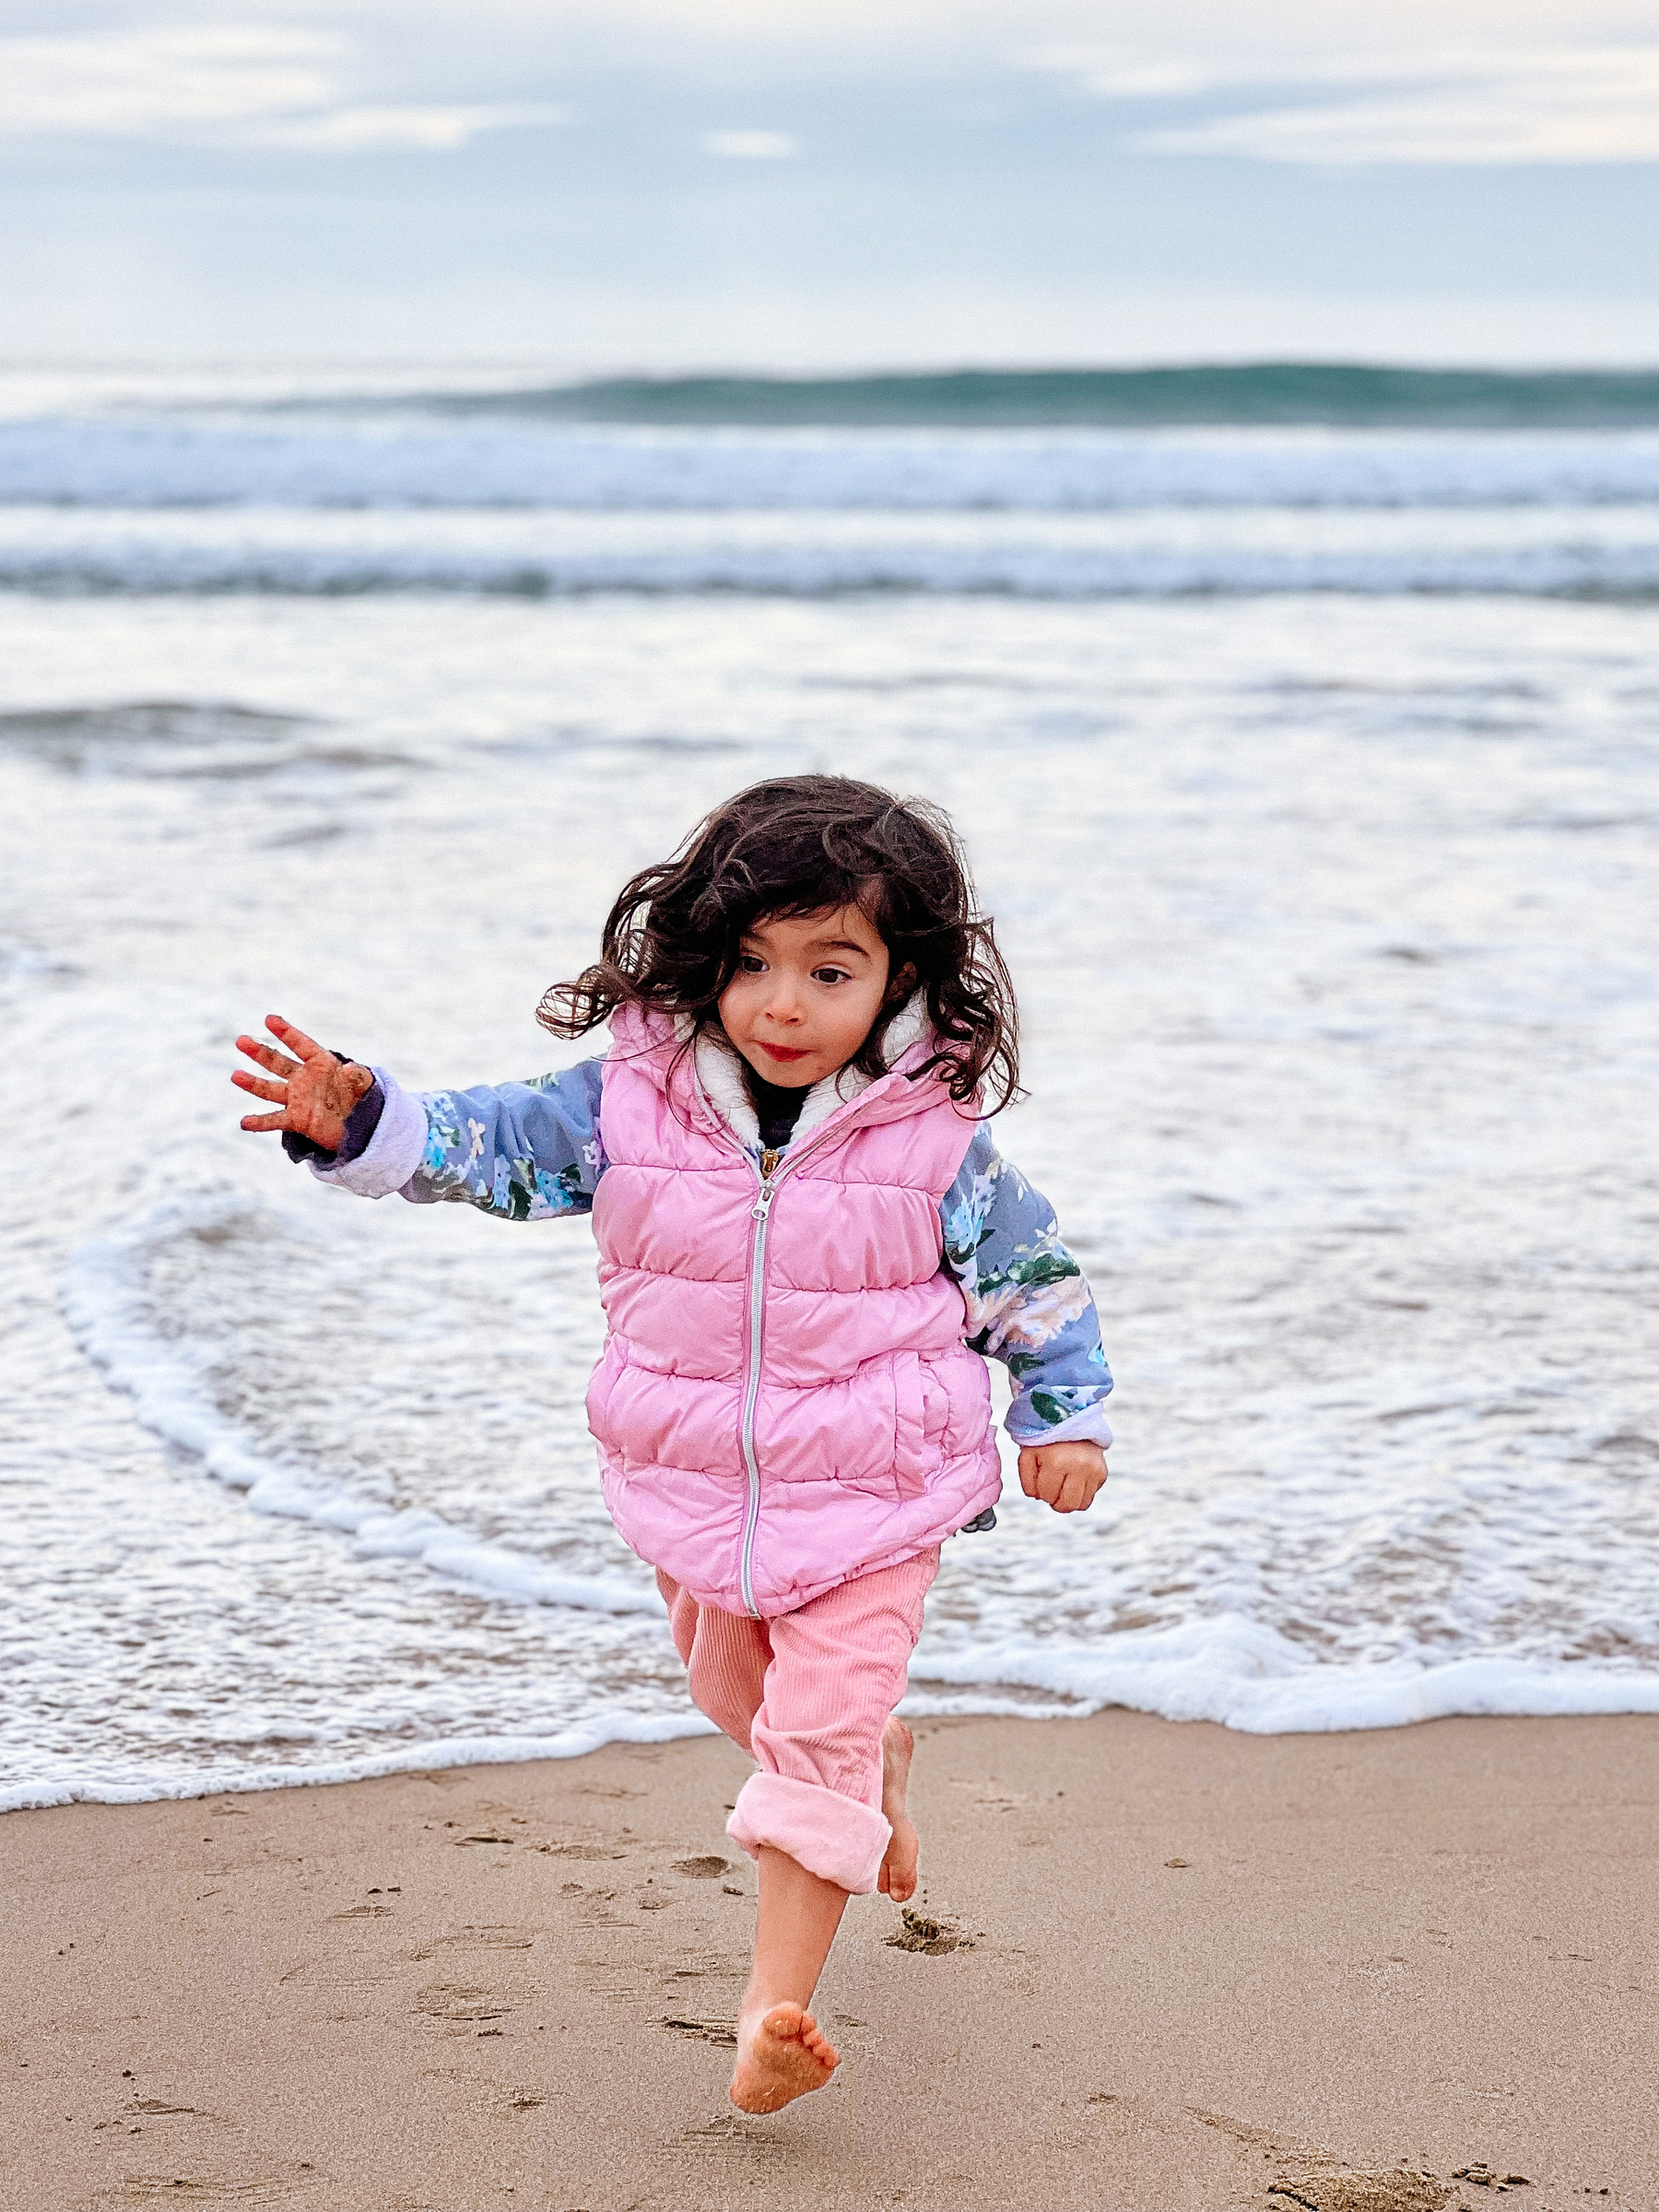 A girl runs towards us, escaping the sea water. 